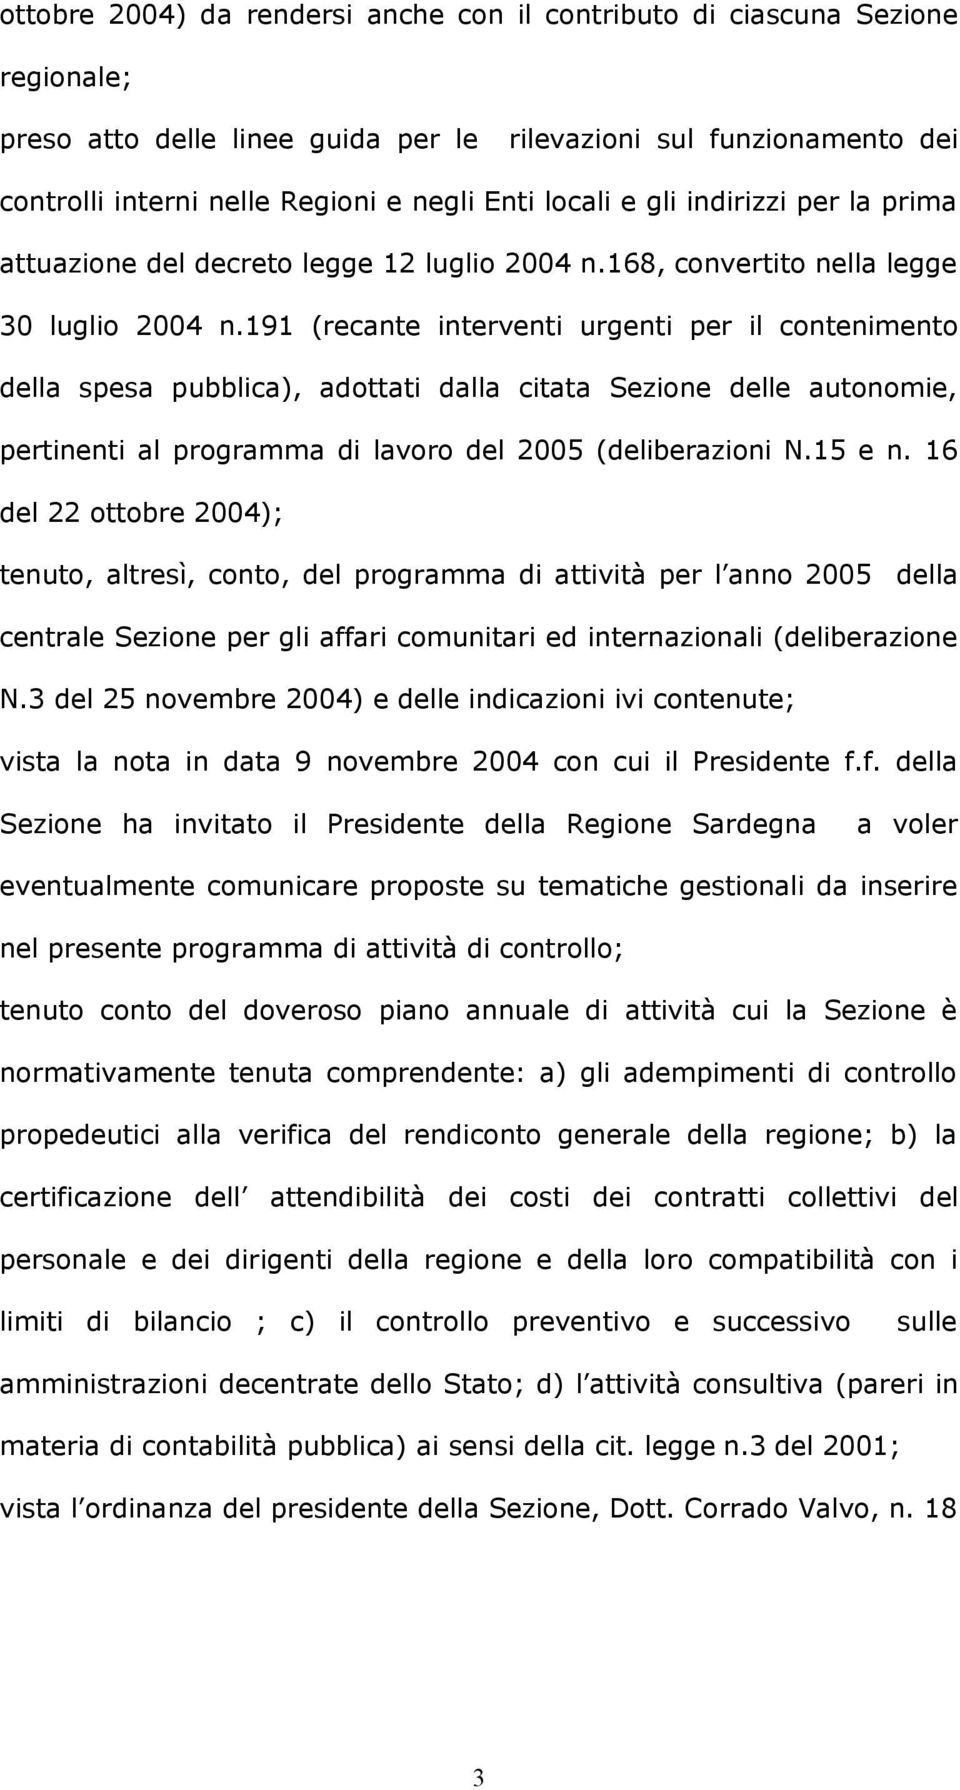 191 (recante interventi urgenti per il contenimento della spesa pubblica), adottati dalla citata Sezione delle autonomie, pertinenti al programma di lavoro del 2005 (deliberazioni N.15 e n.